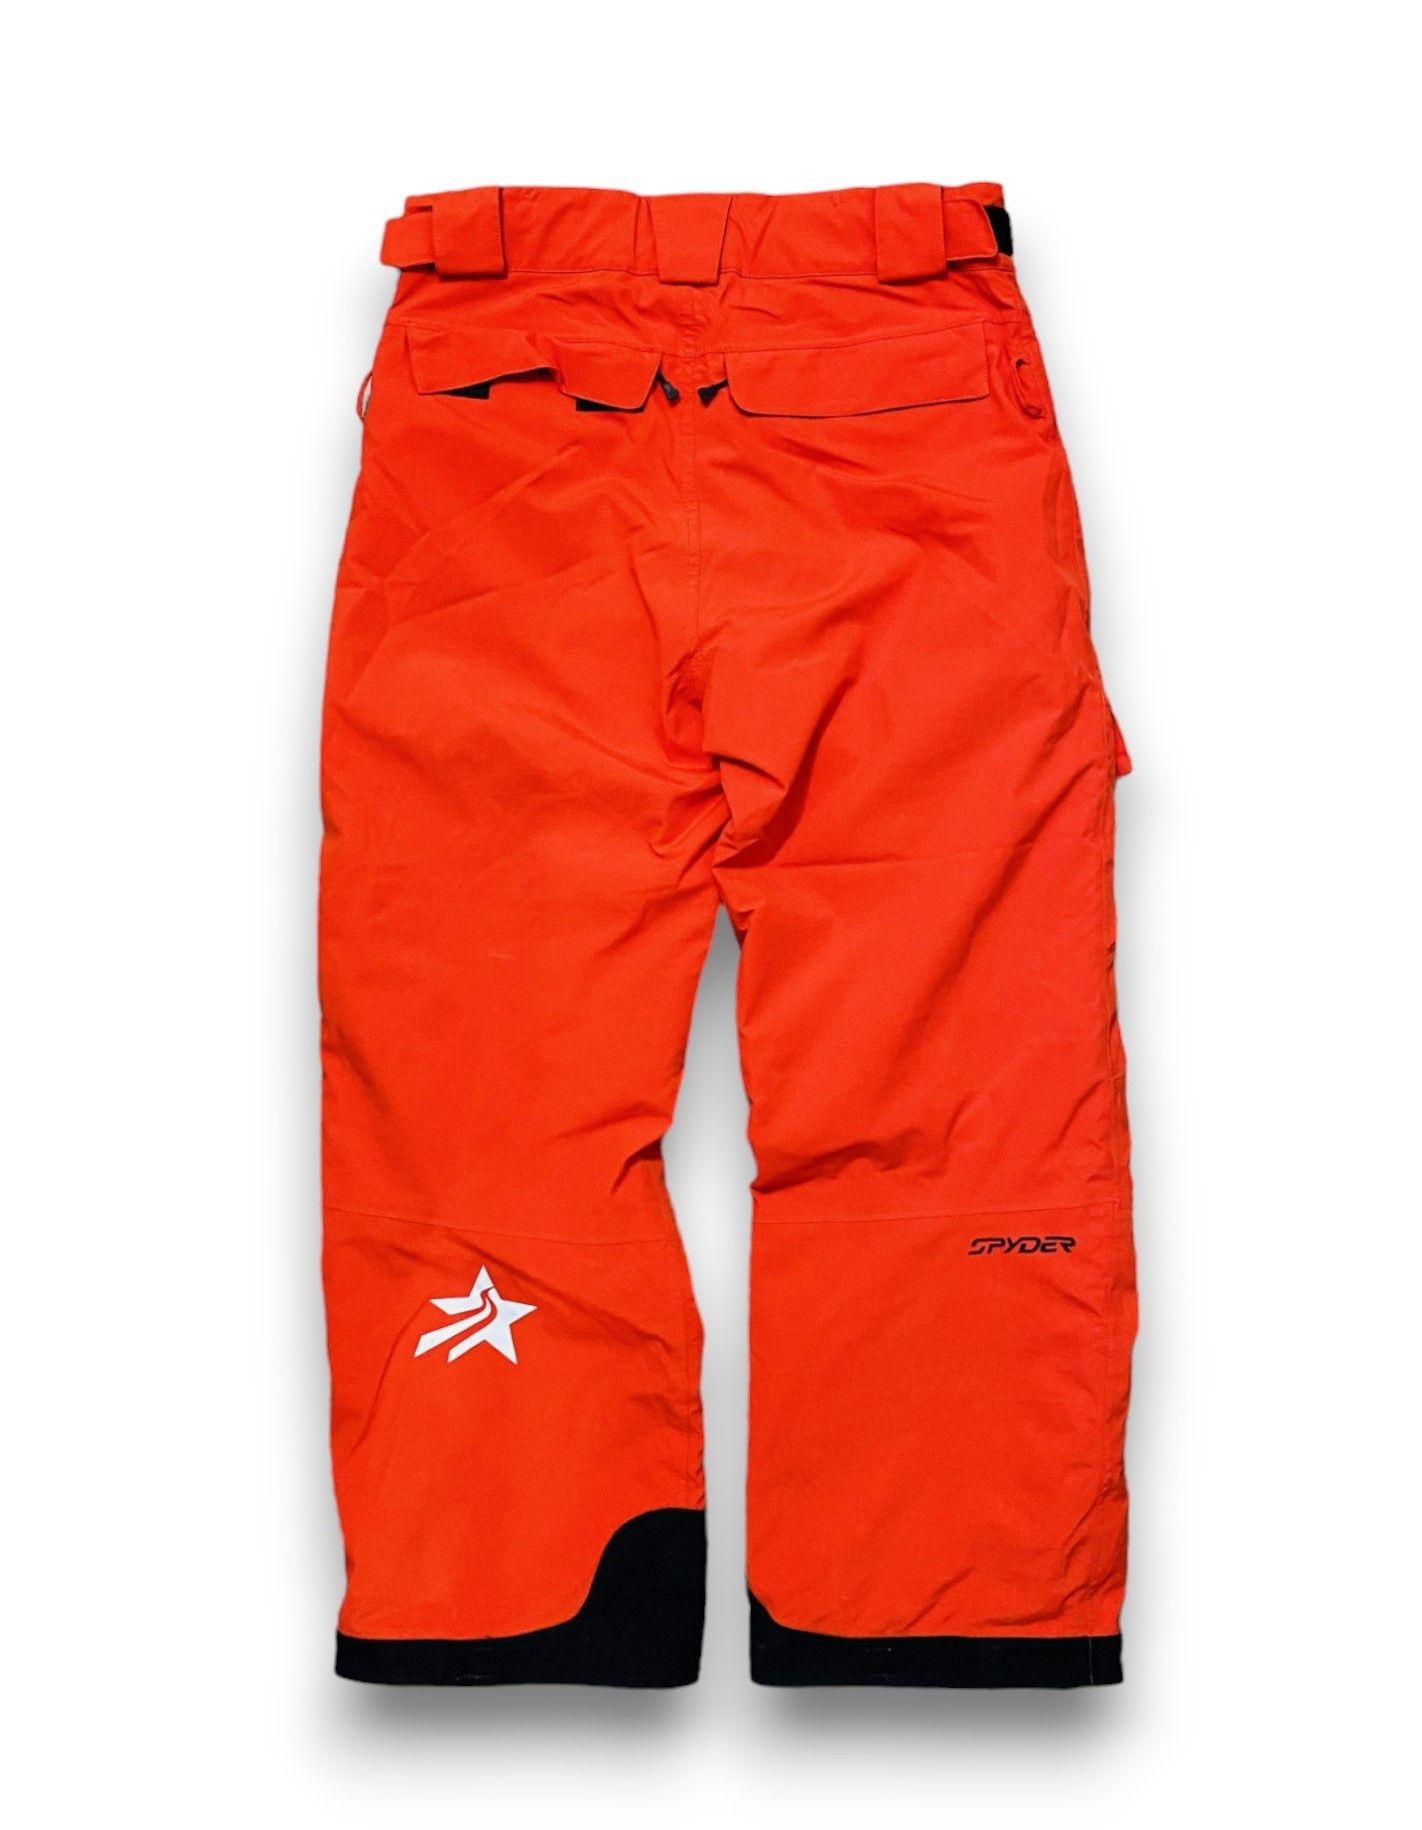 Outdoor Life - Spyder Pants Snowboarding Ski Outdoor Orange Men's M/L - 8